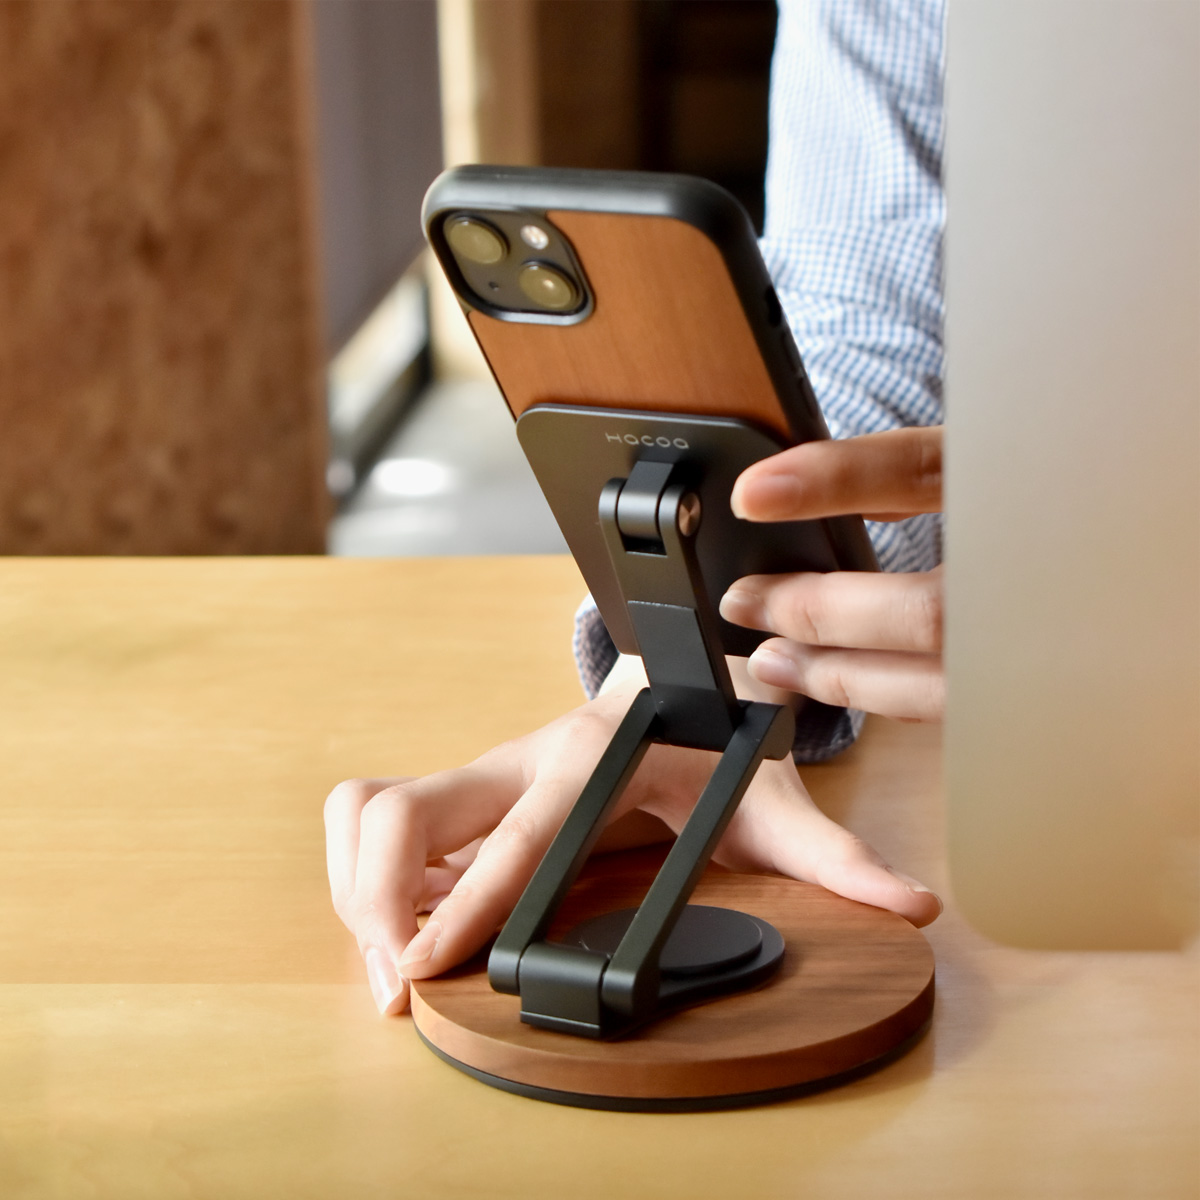 「Smartphone Stand Adjustable」角度調整ができる折り畳み式スマートフォンスタンド